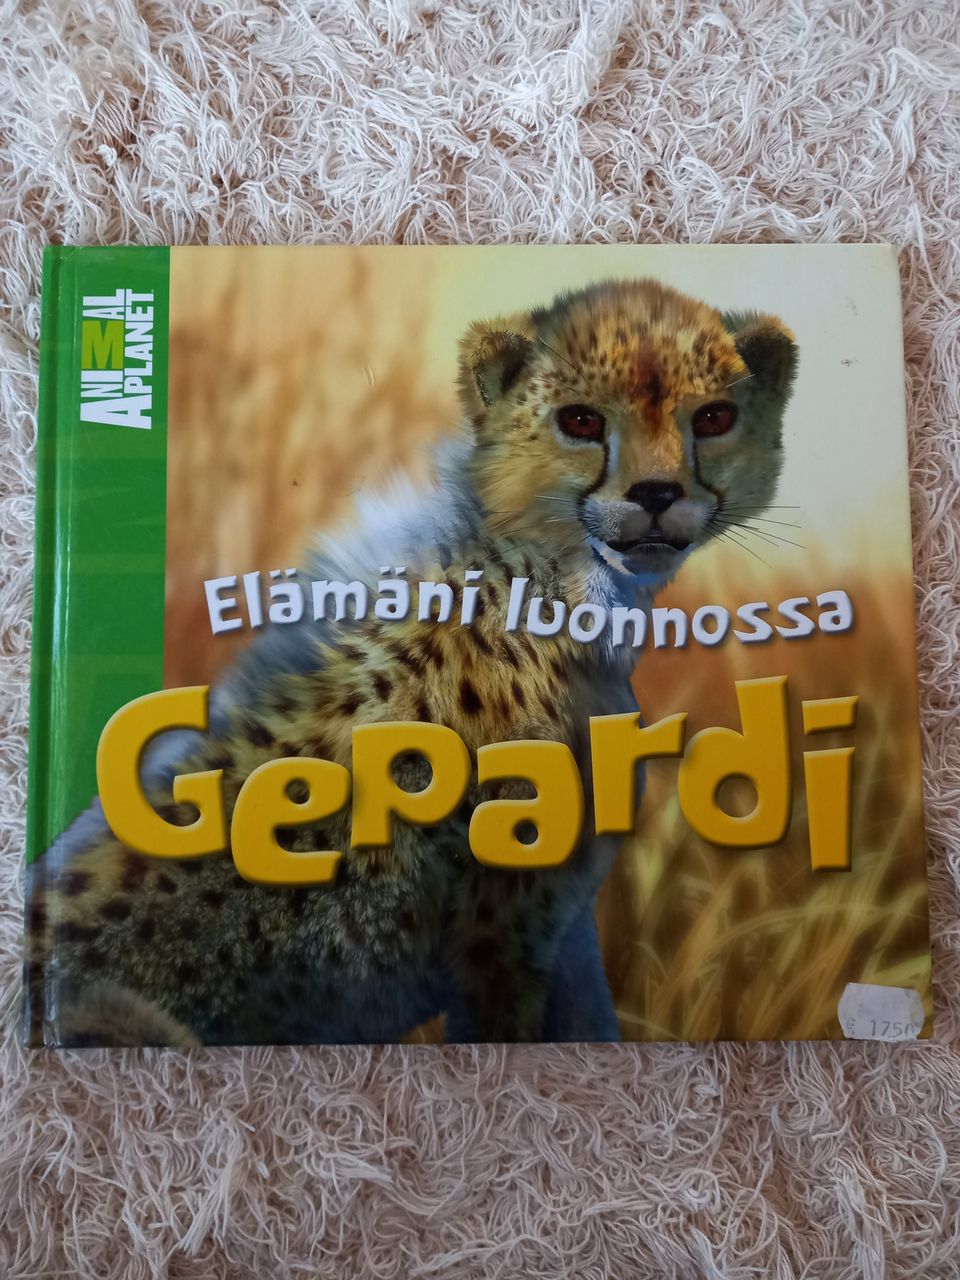 Elämäno luonnossa Gepardi